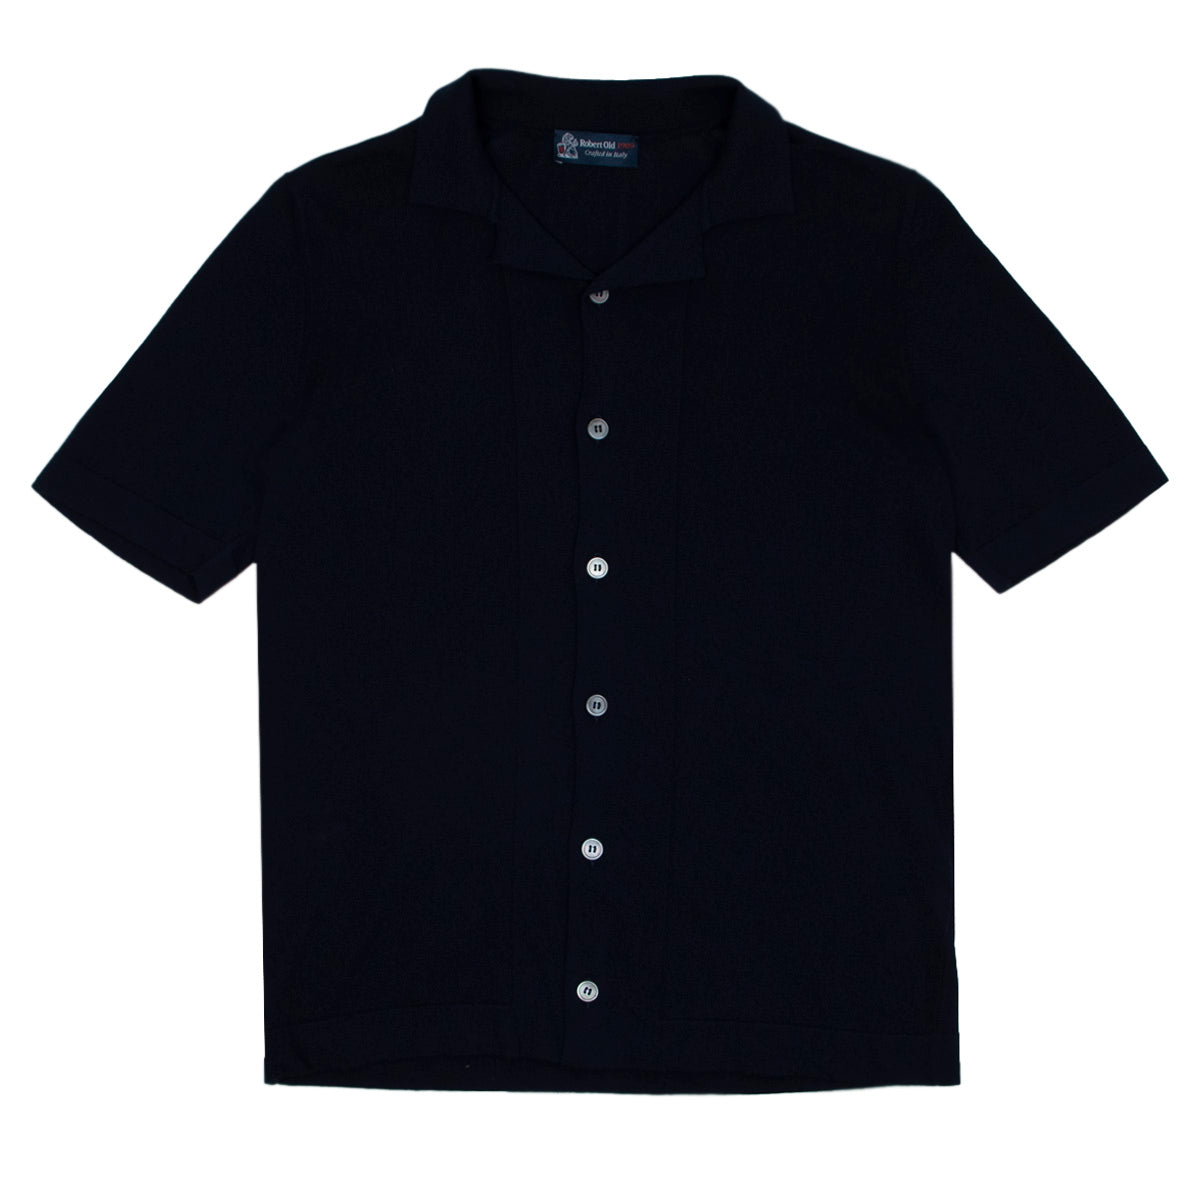 Navy 100% Cotton Italian Knit Shirt  Robert Old   